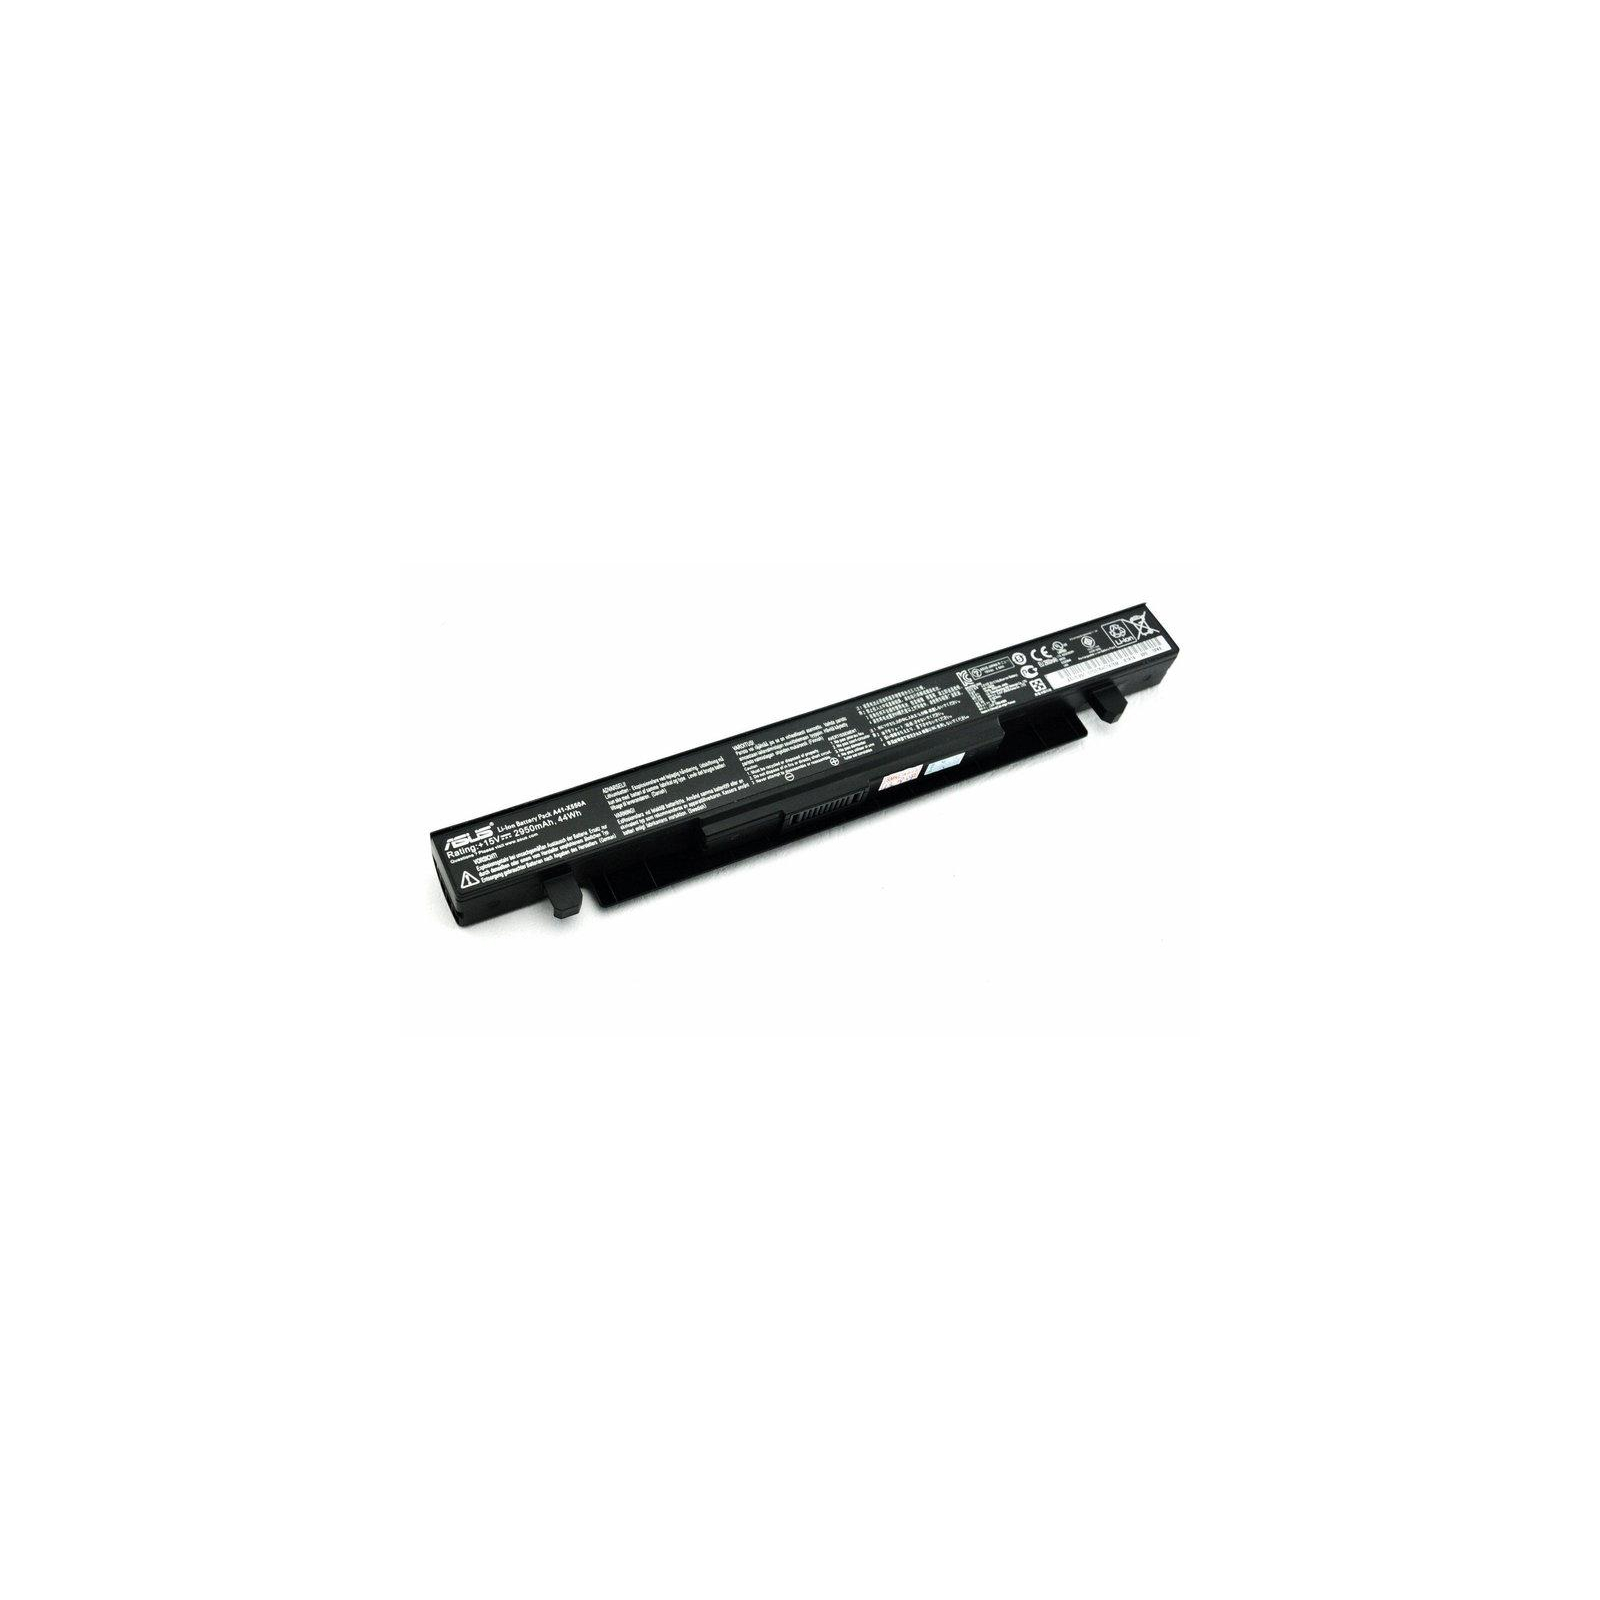 Акумулятор до ноутбука ASUS X450 A41-X550A, 2950mAh, 4cell, 15V, Li-ion, черная (A41935)